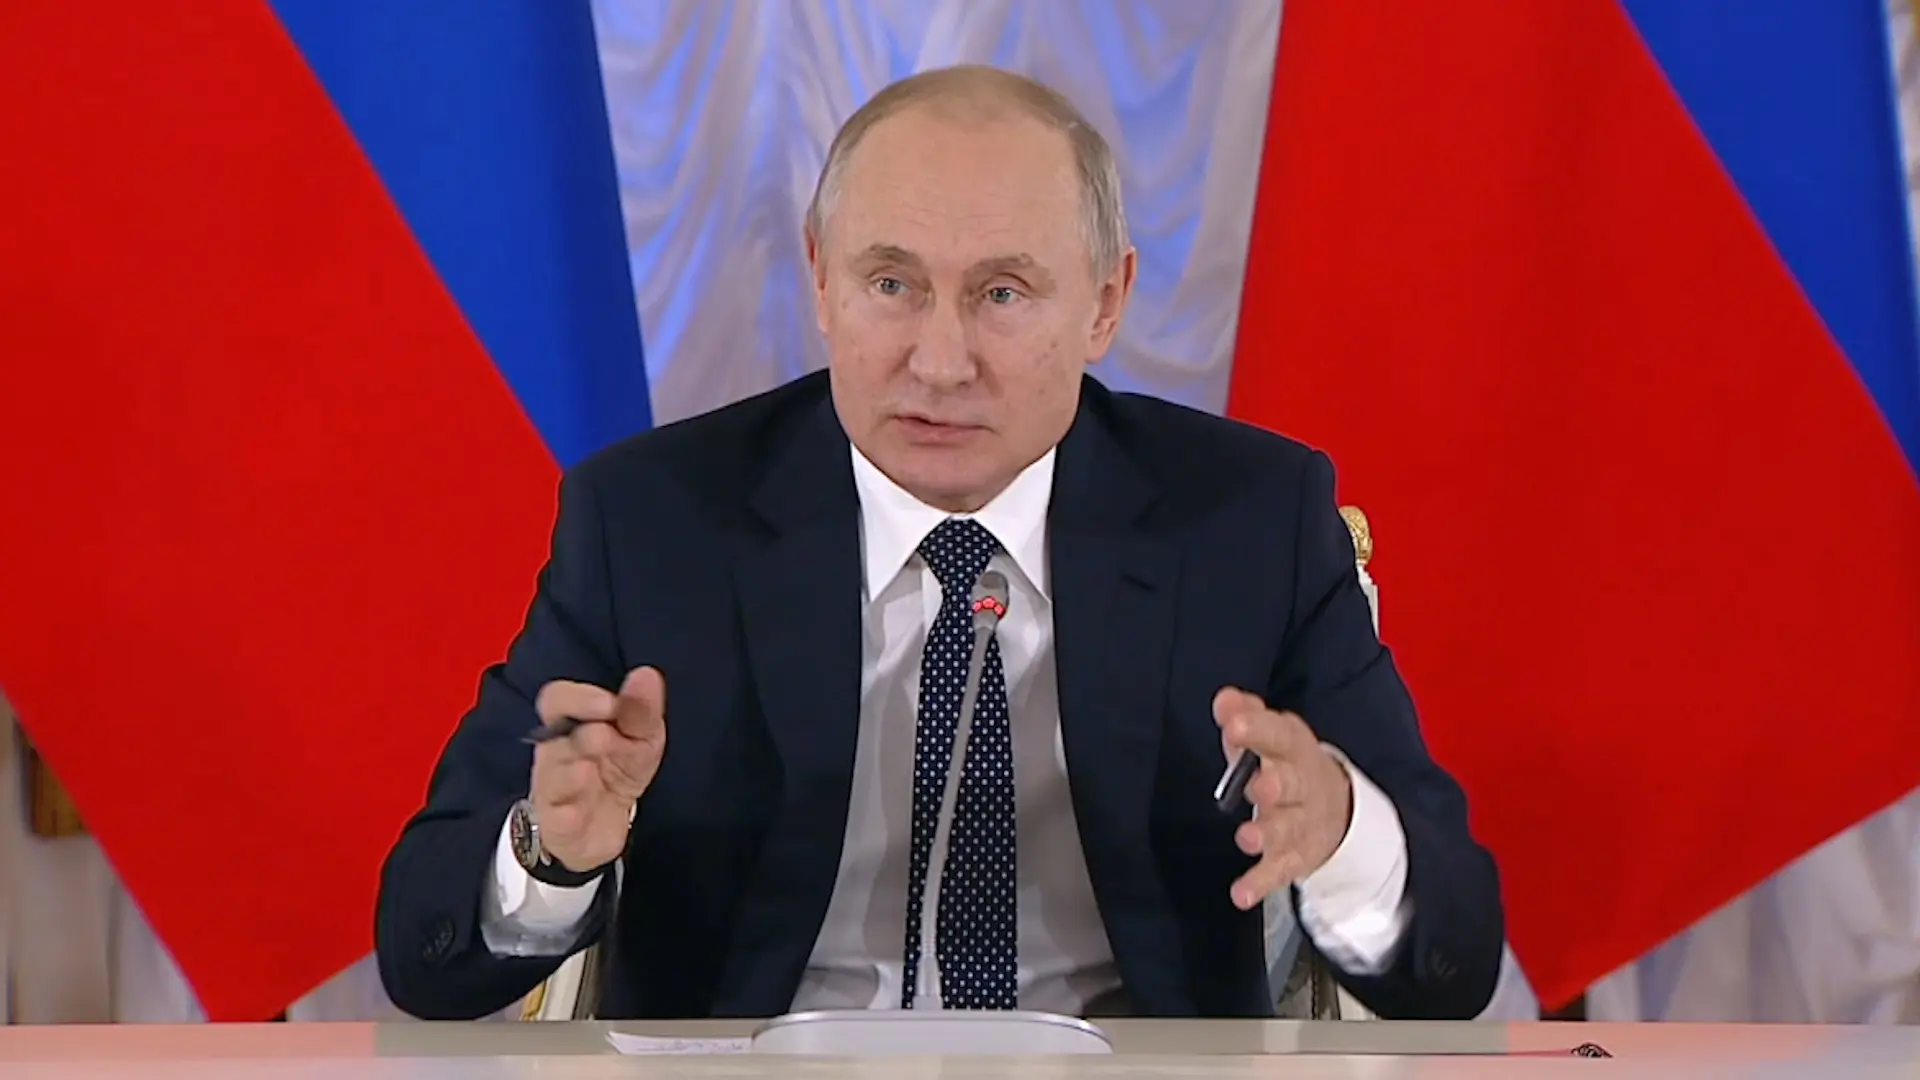 Vidéo : Vladimir Poutine veut contrôler le rap en Russie